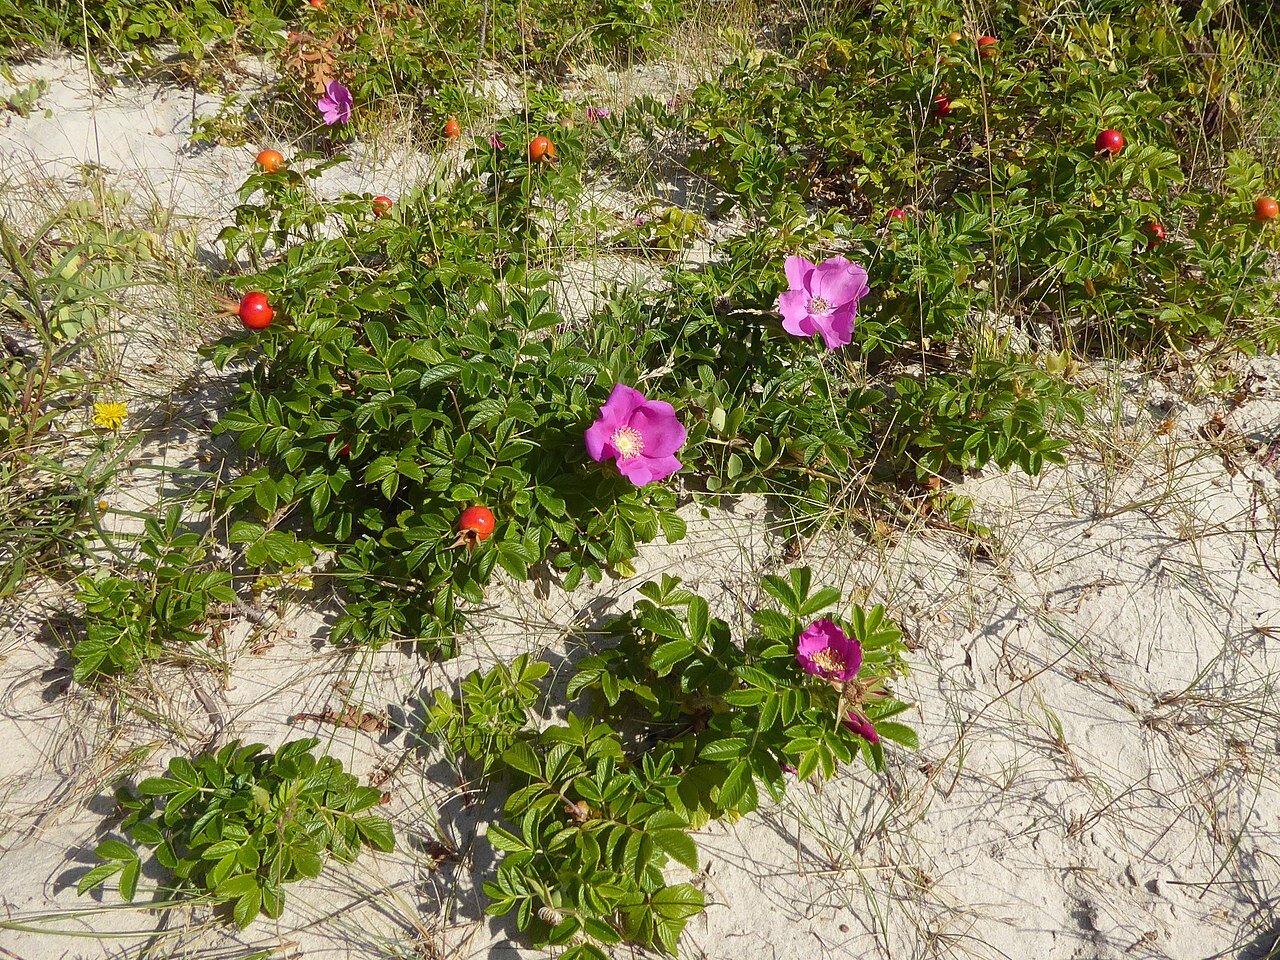 Zdjęcie ukazuje krzaczki róży pomarszczonej. Kwiaty są różowe o dużych płatkach. Krzaki rosną nisko przy ziemi na piaszczystym podłożu. Na krzakach gdzieniegdzie są czerwone owoce róży.    